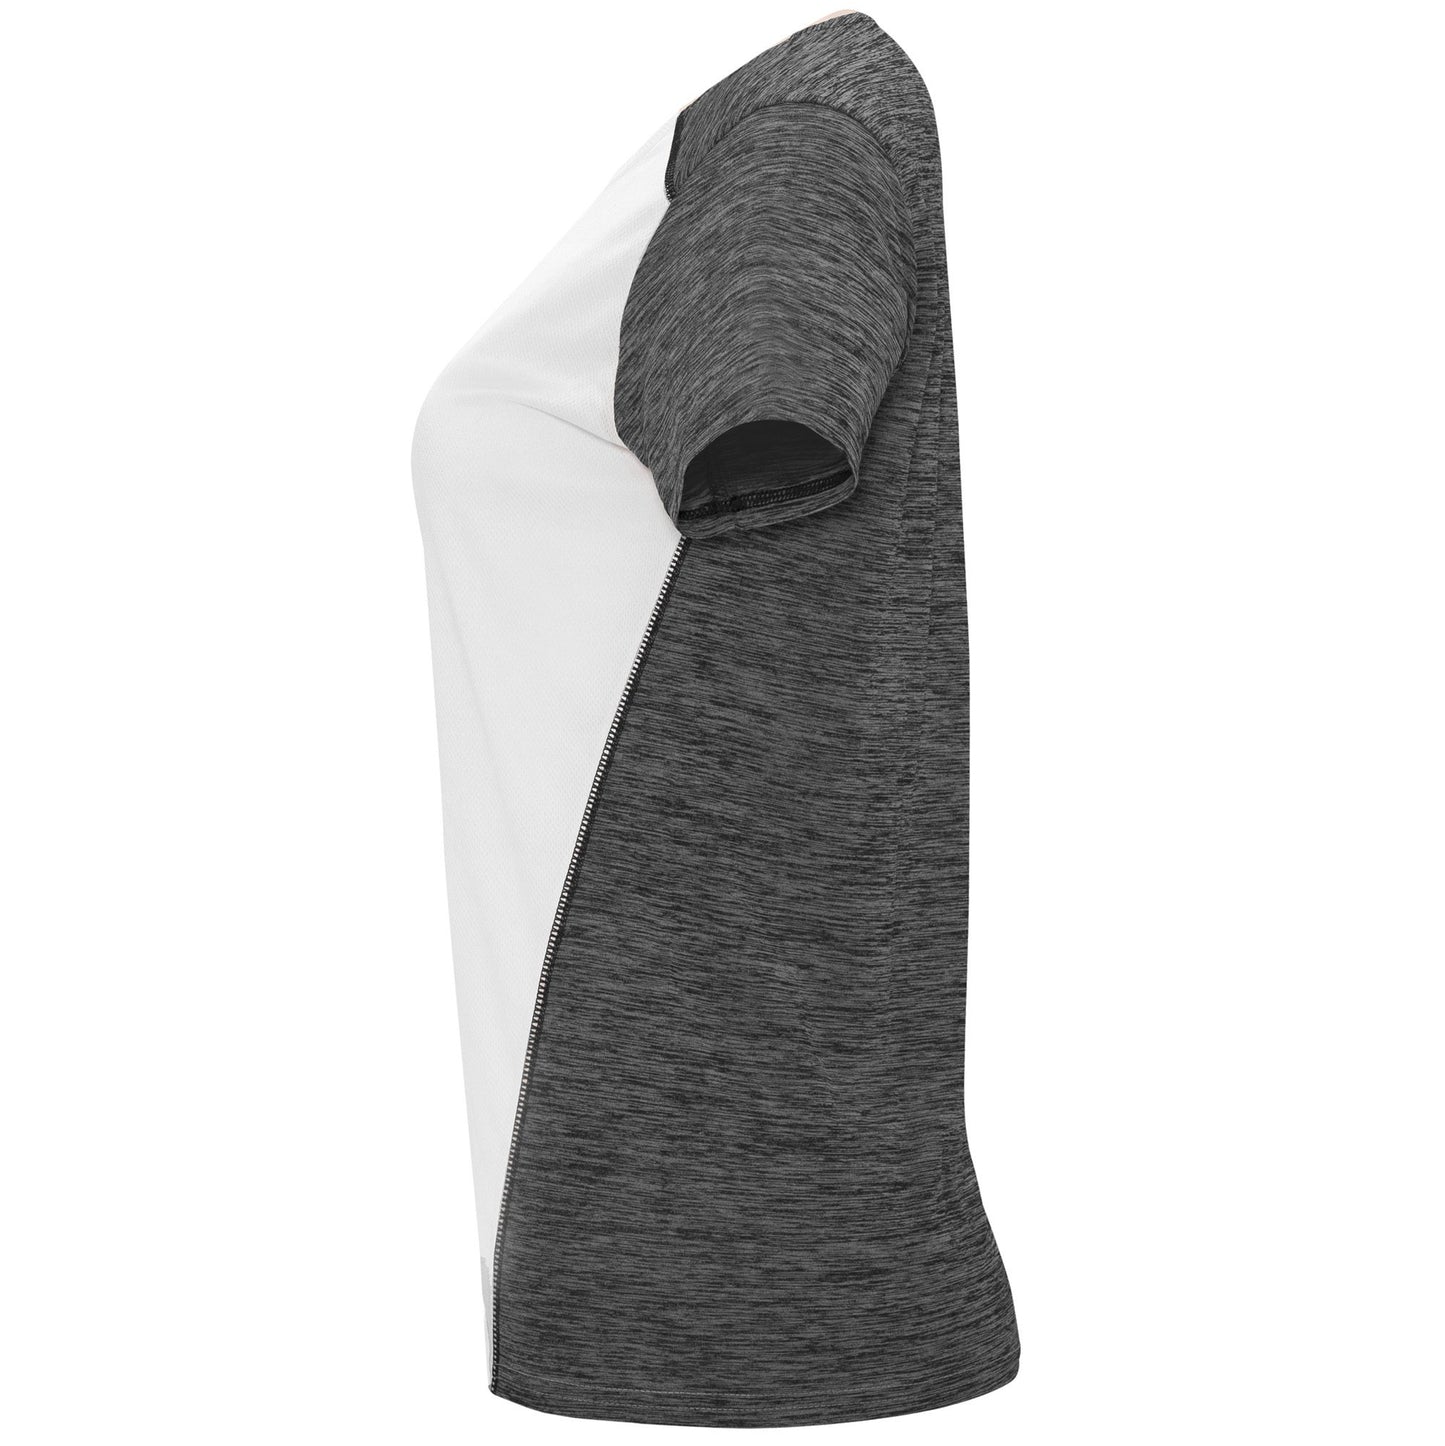 Camiseta deportiva mujer manga corta - Zolder